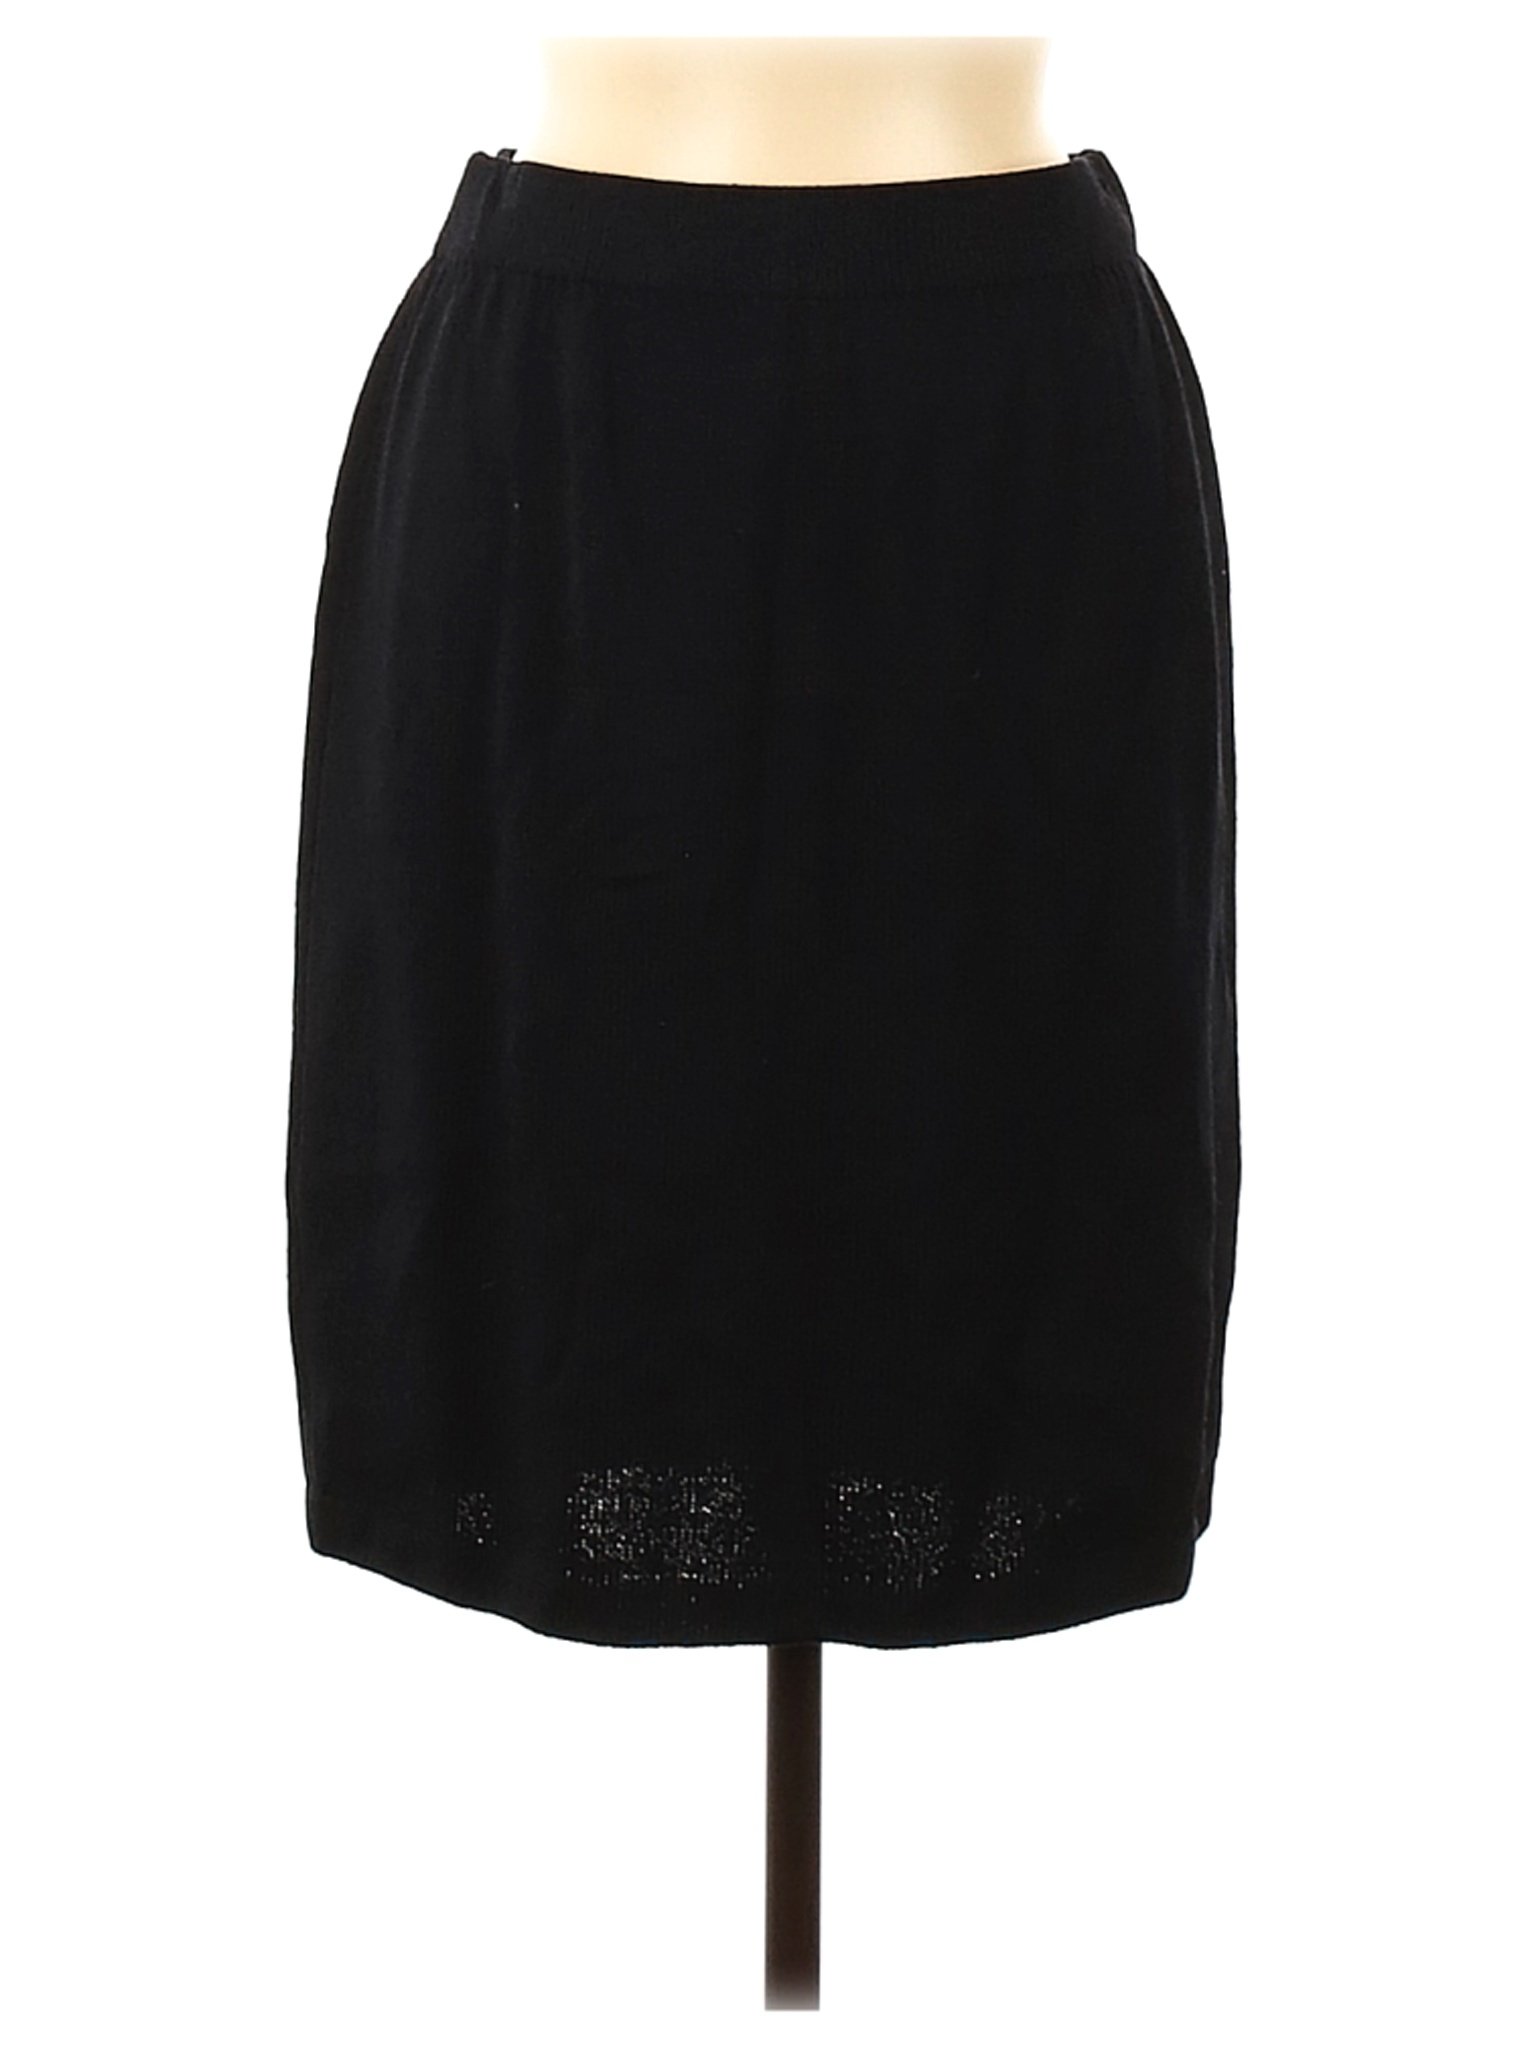 St. John Women Black Casual Skirt 6 | eBay